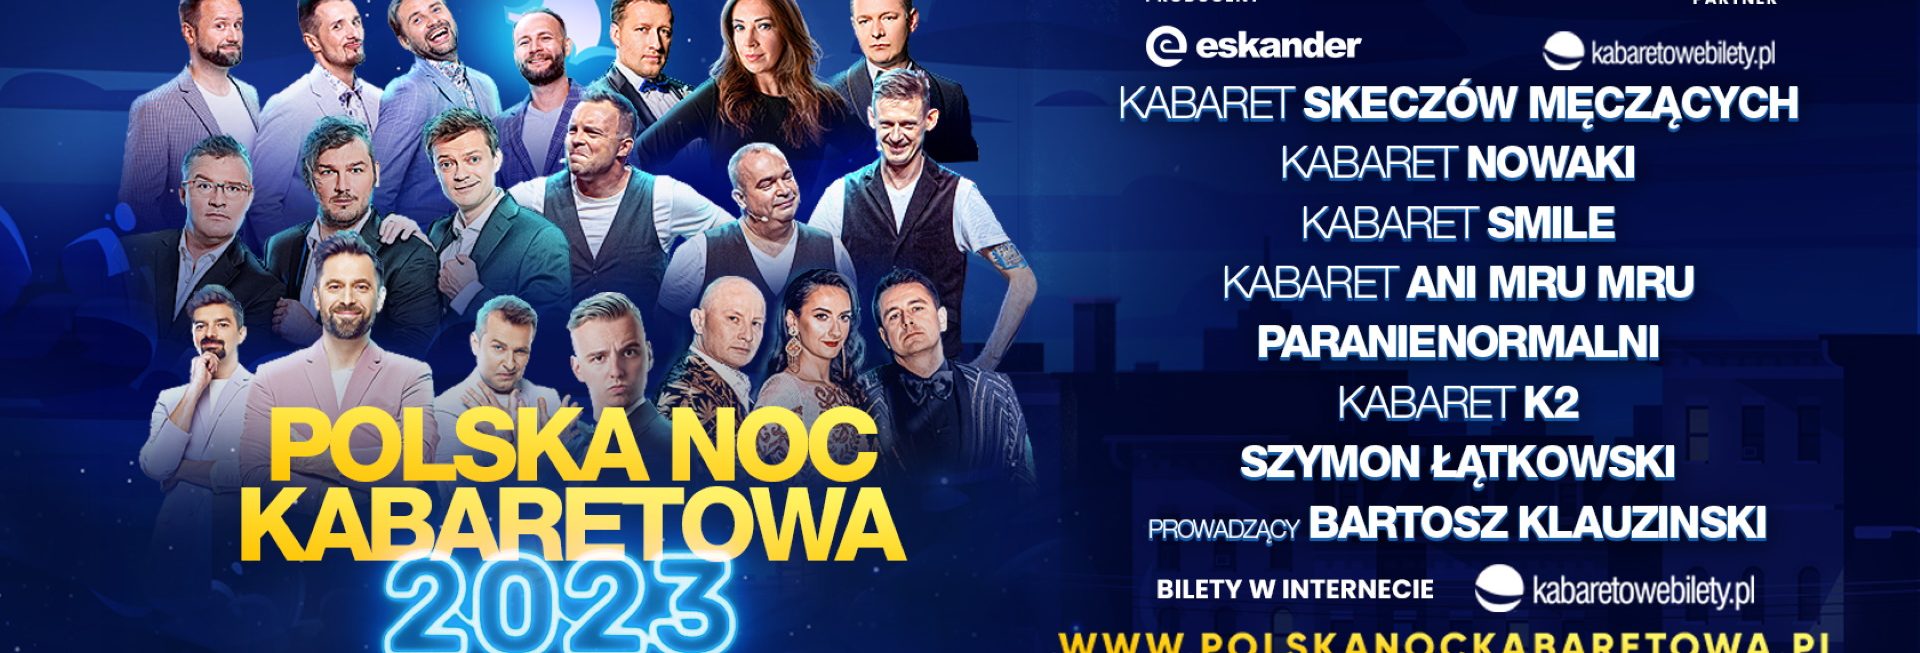 Plakat zapraszający do Elbląga na Polską Noc Kabaretową Elbląg 2023.